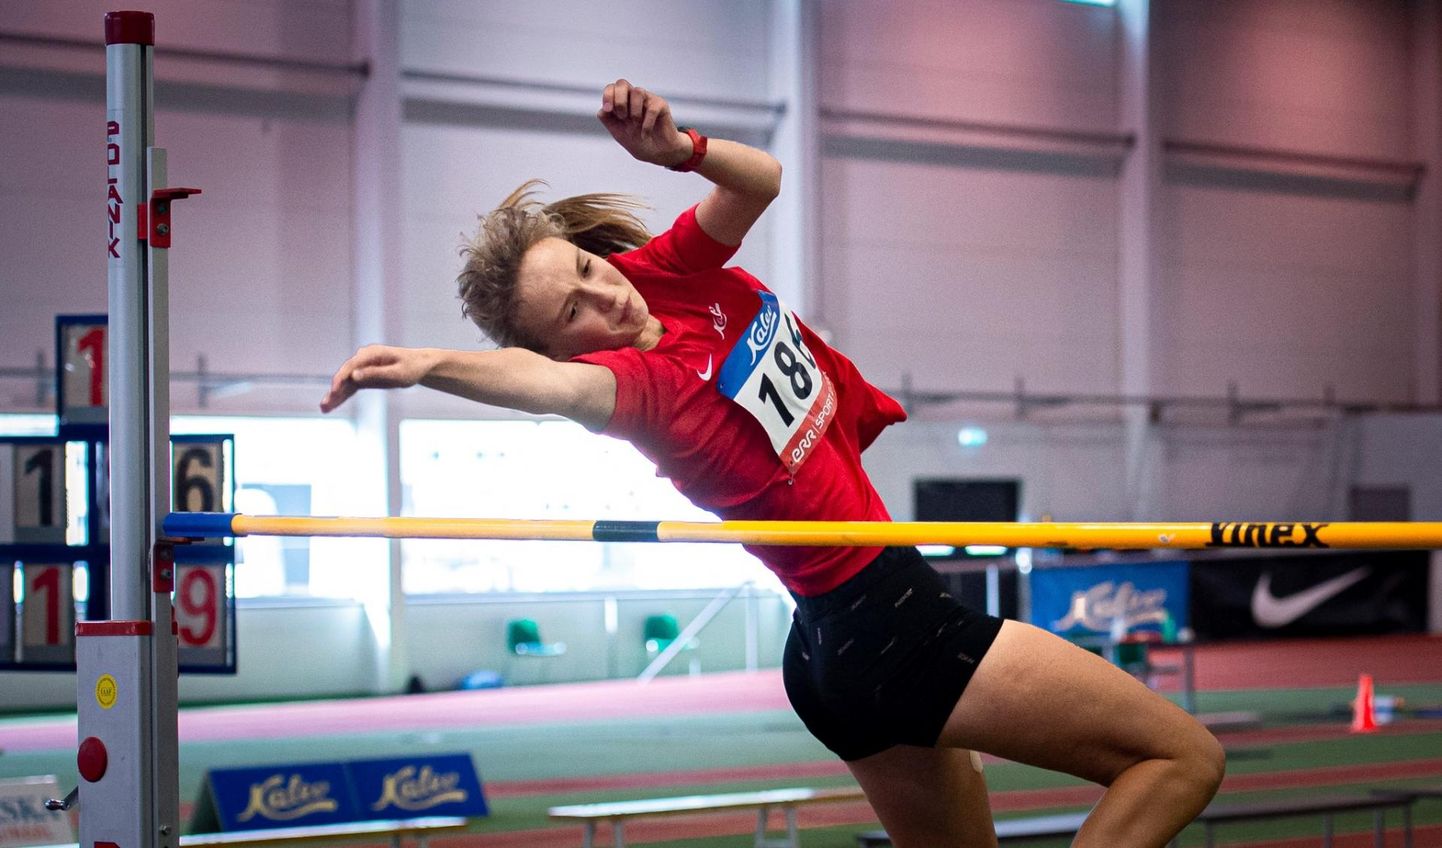 Treener Tauno Tihti käe all harjutav Kati-Ly Randviir parandas Lääne-Viru maakonna tüdrukute kõrgushüpperekordit ja oli samal alal võidukas sarja "TV 10 olümpiastarti" Võru etapil.